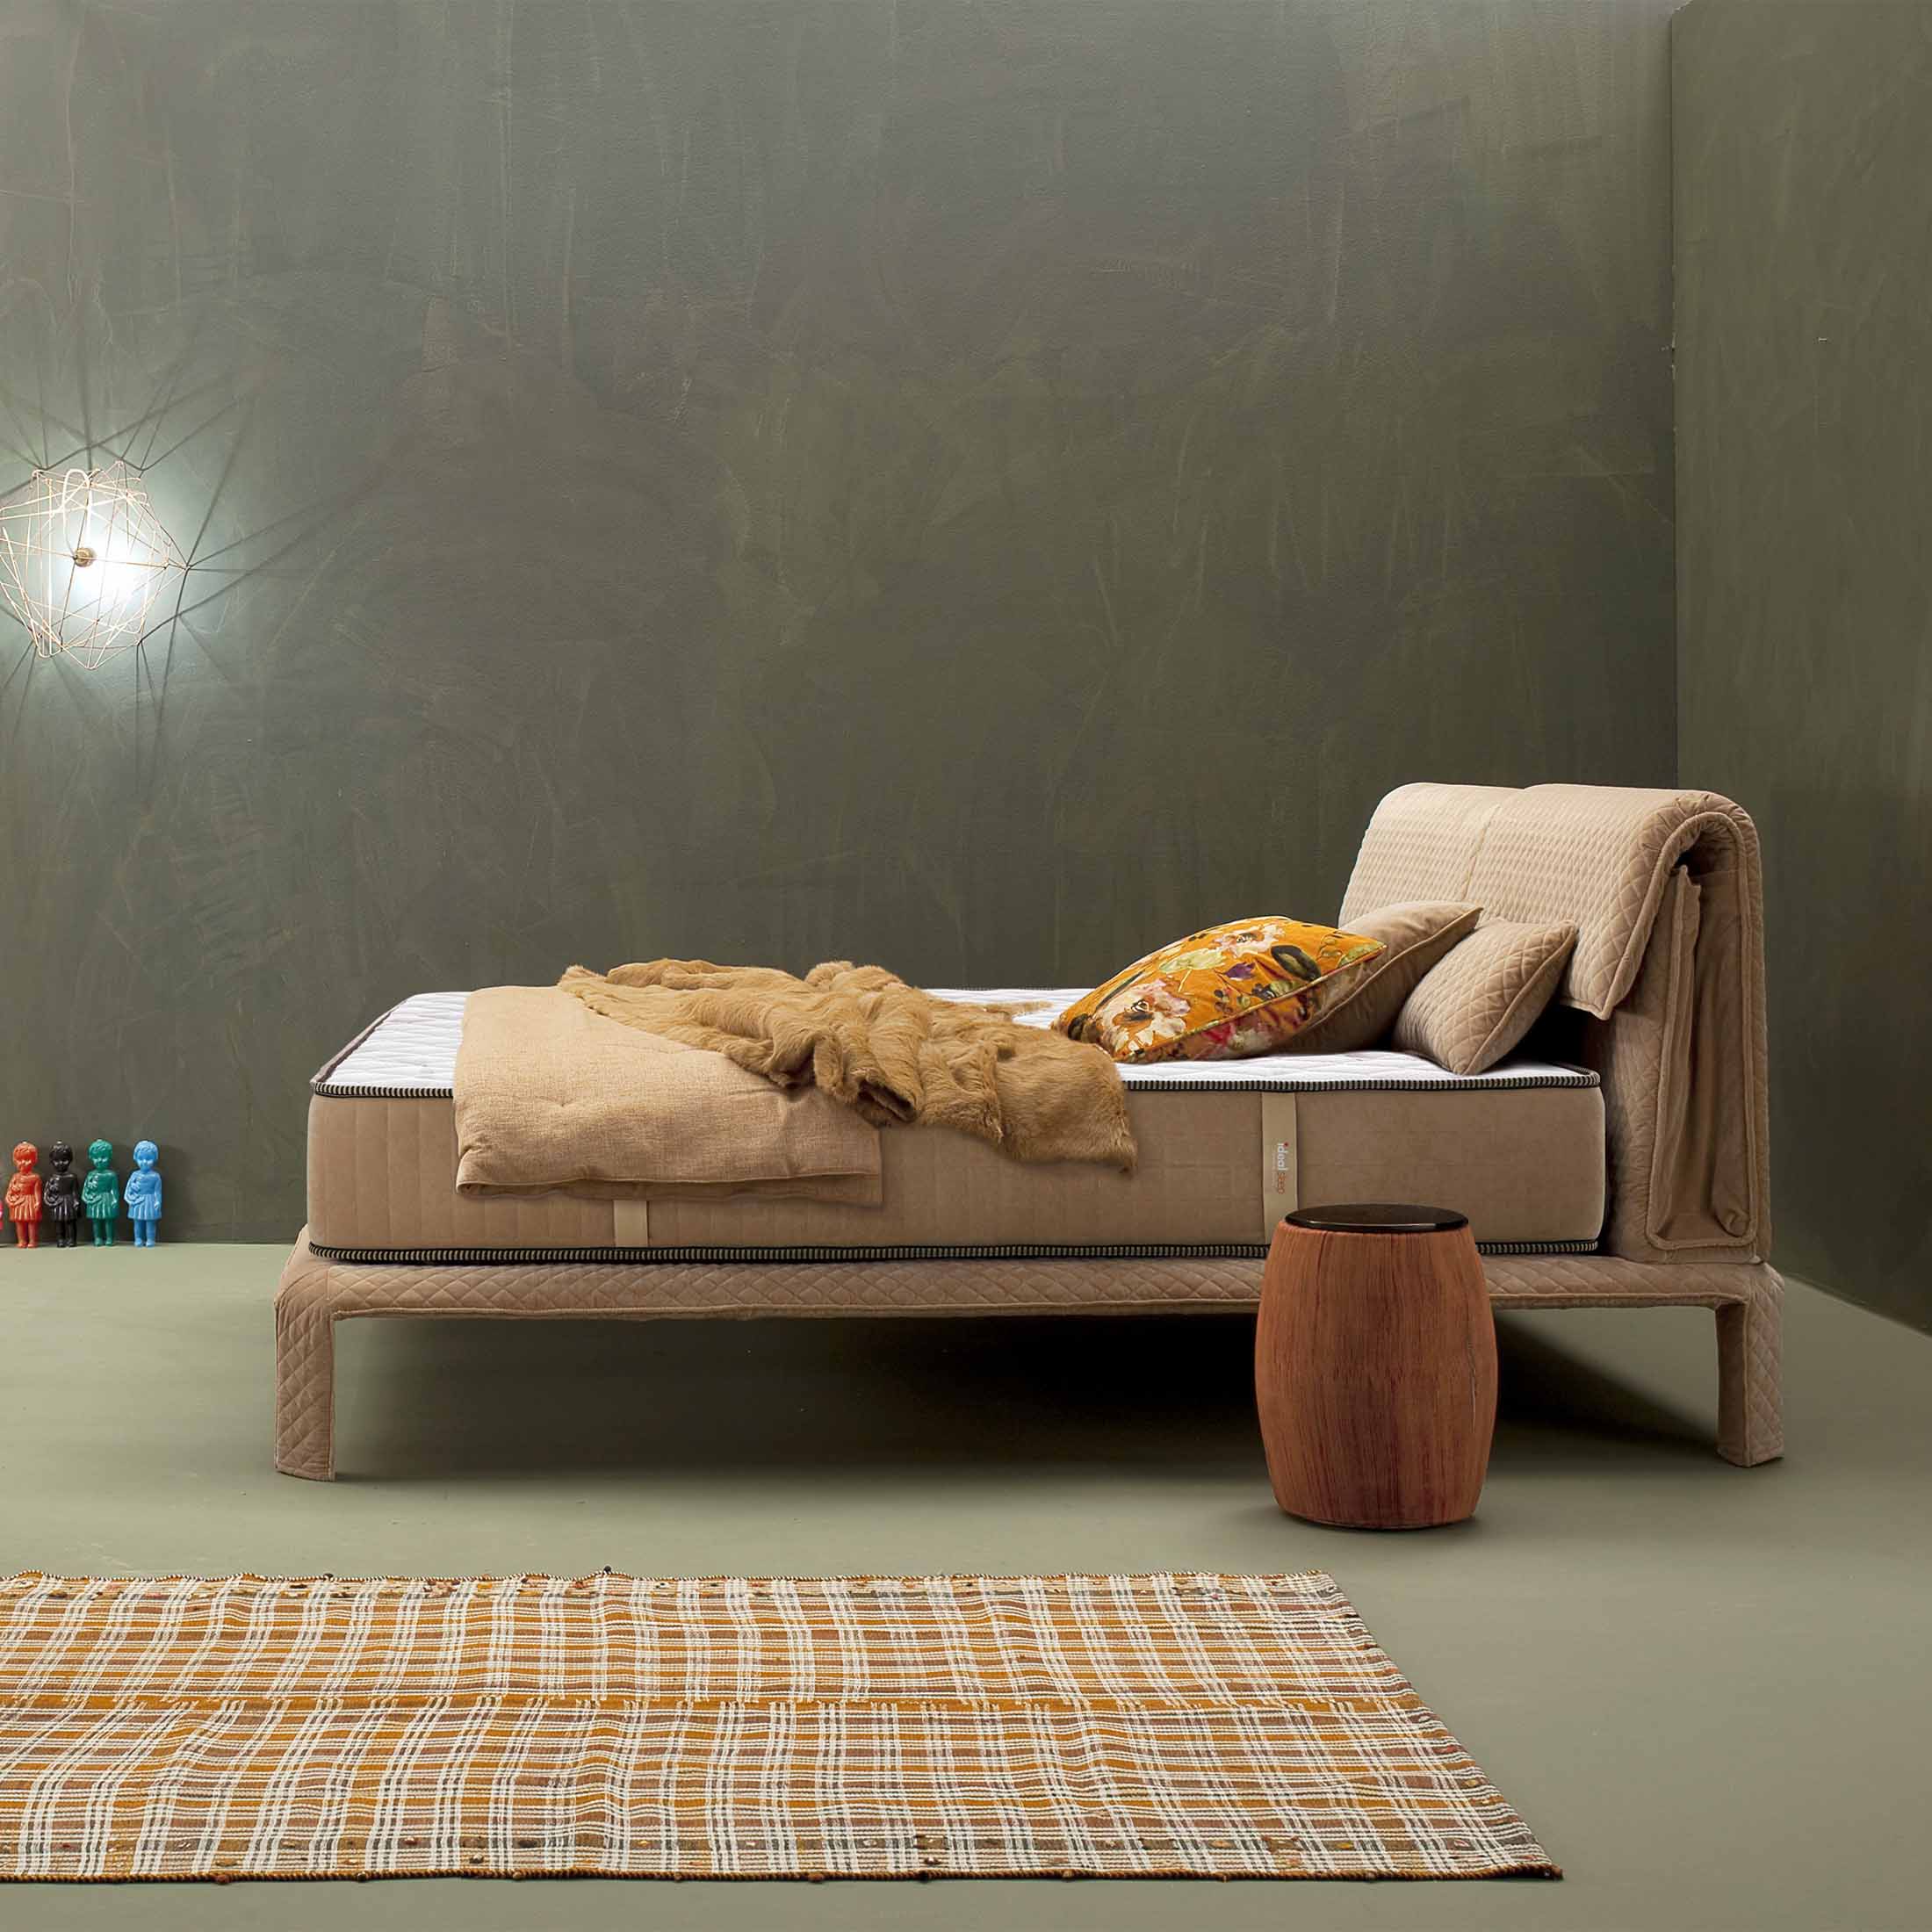 Saltea Ideal Sleep HOTEL SERIES LUX, superortopedică, cu spumă poliuretanică și arcuri, husă cu aerisire optimă, Grosime 25 cm